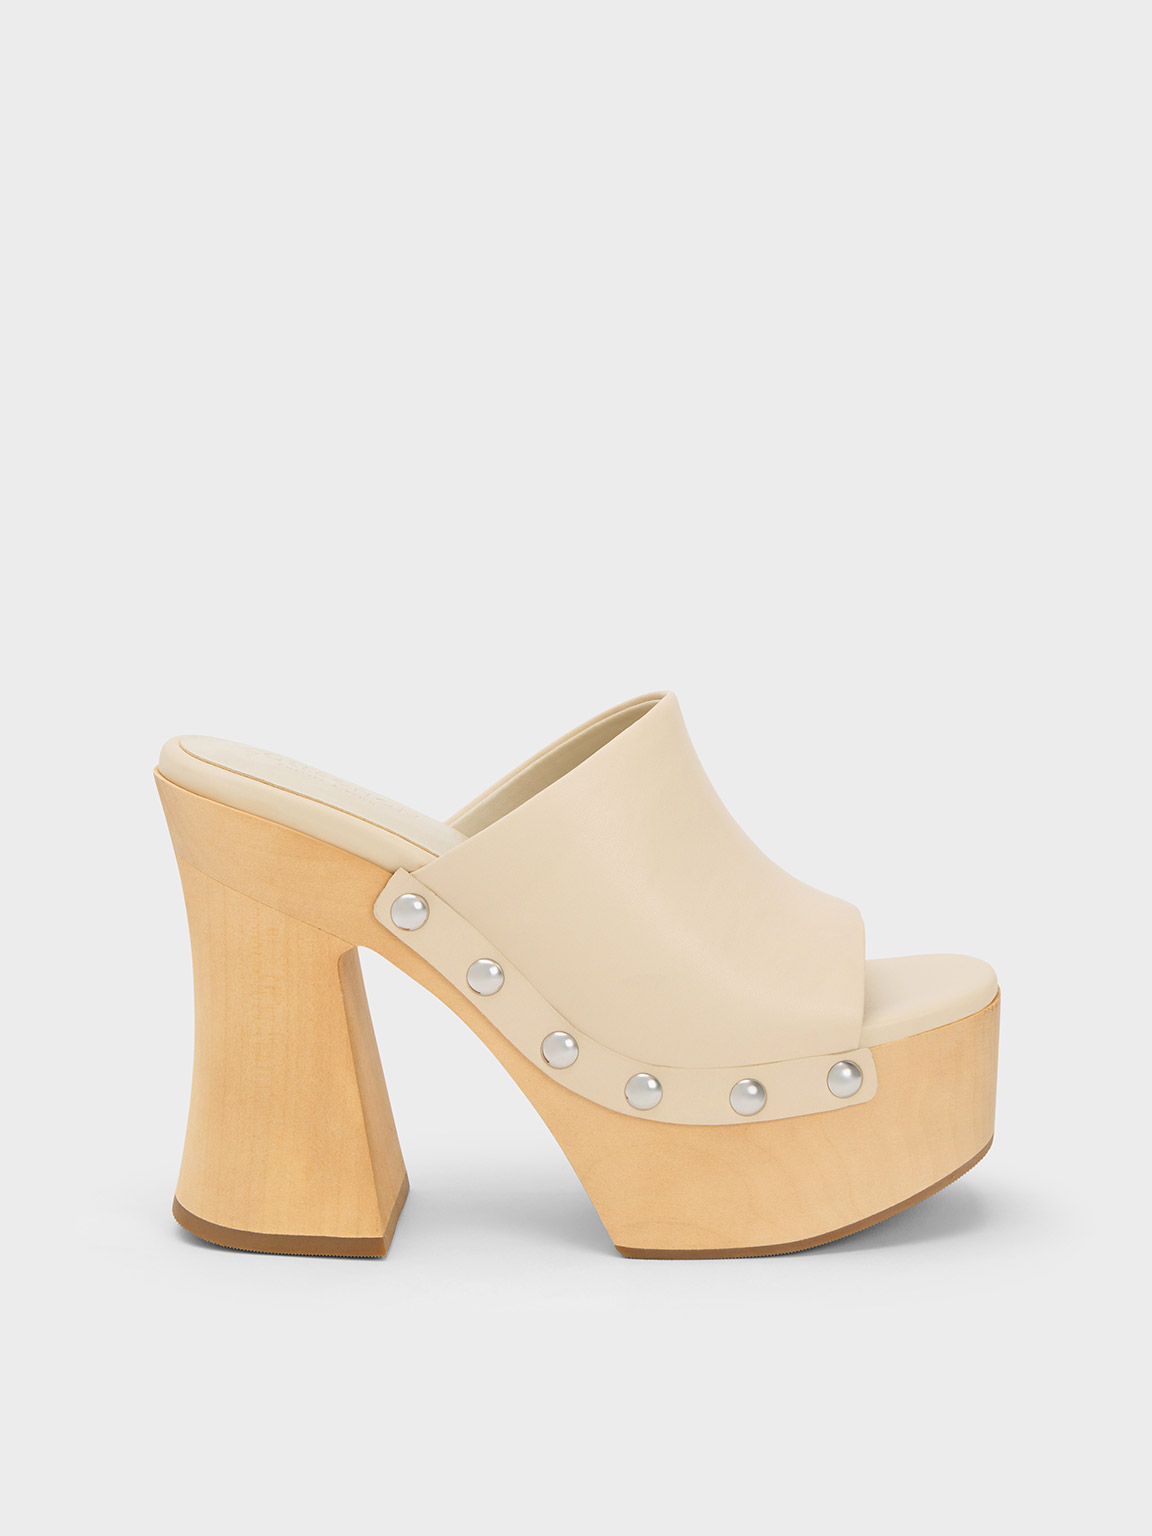 Merrell Women's Haven Slide Slip-On Shoe Size 8.5 Oak Leather Flat Mules  Clogs